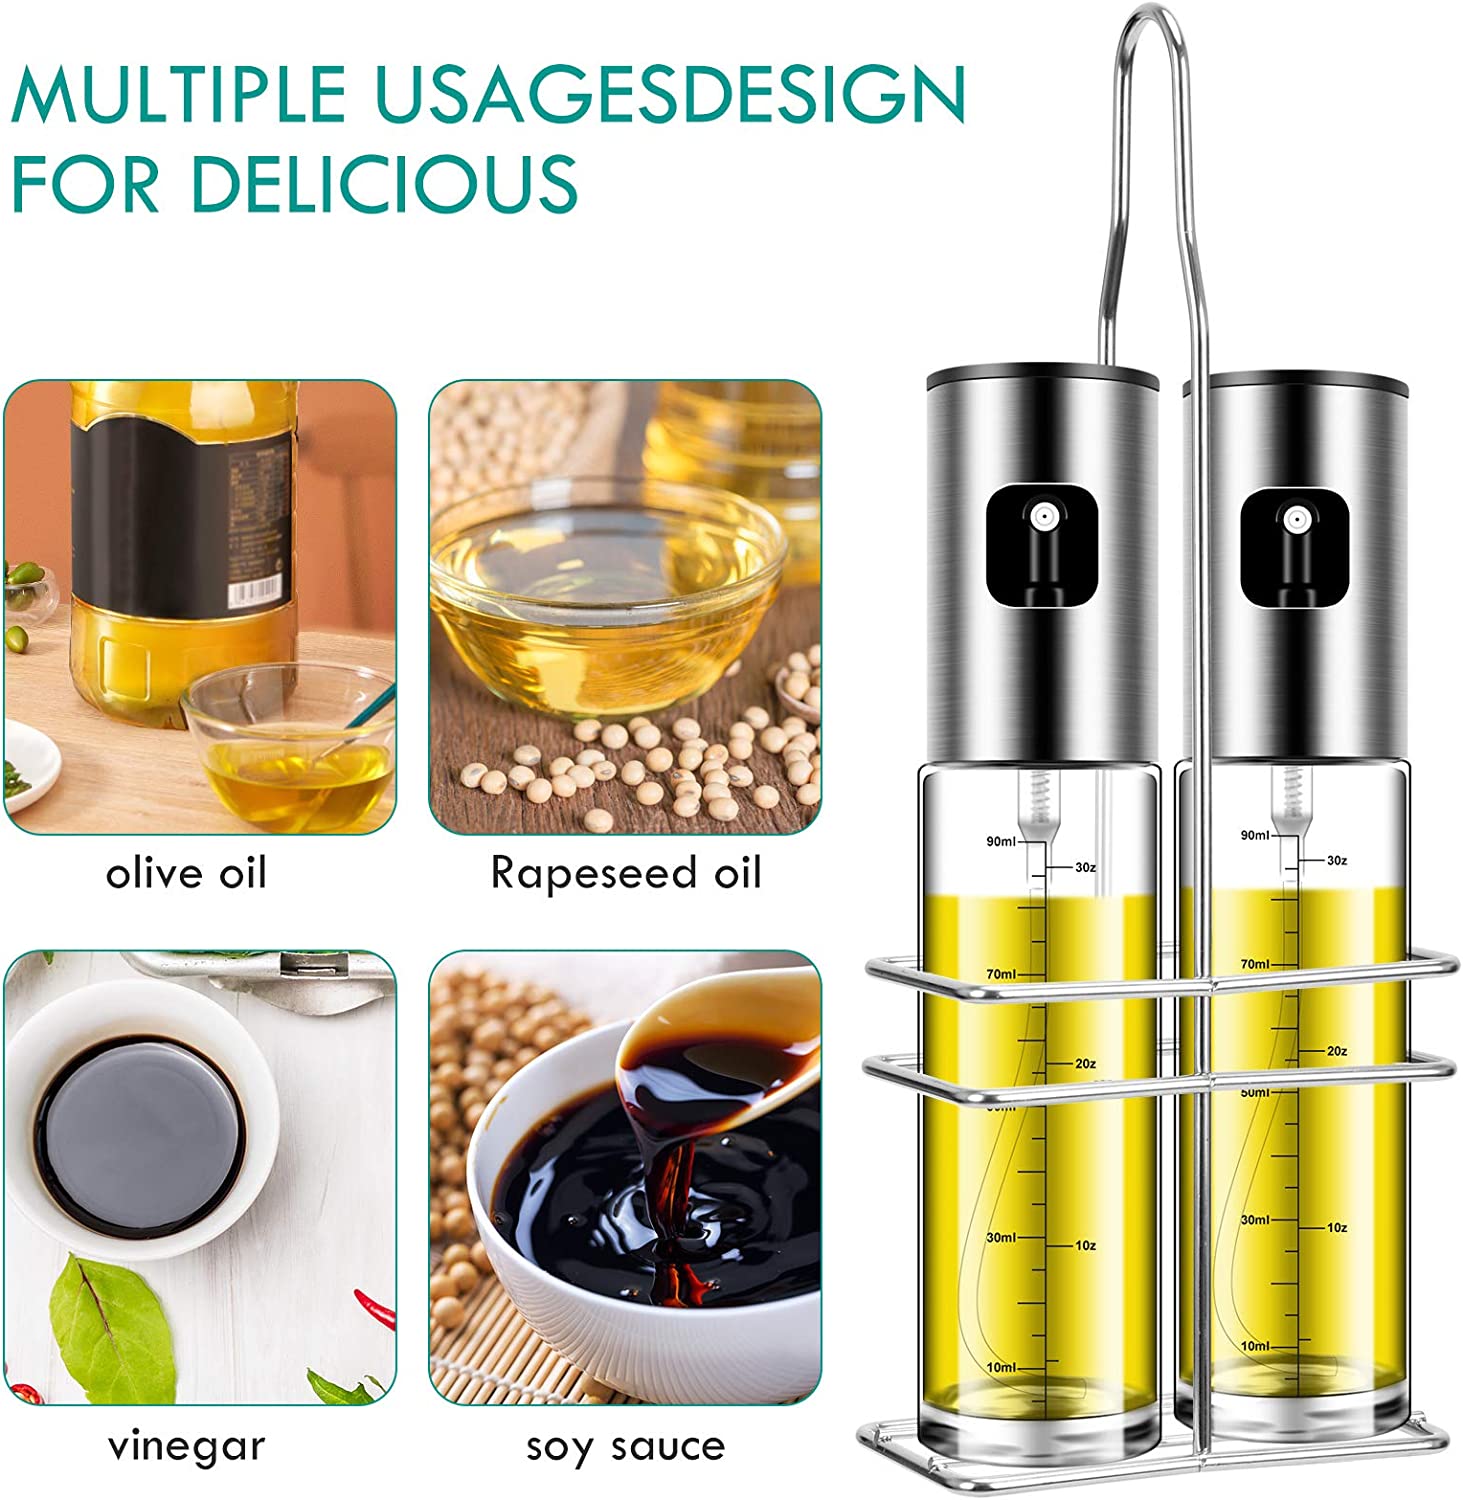  PUZMUG Olive Oil Sprayer, 2 Pack 100mlOil Spray for Cooking,  Spray Bottle Olive Oil Sprayer Mister for Cooking, BBQ, Salad, Baking,  Roasting, Grilling : Home & Kitchen